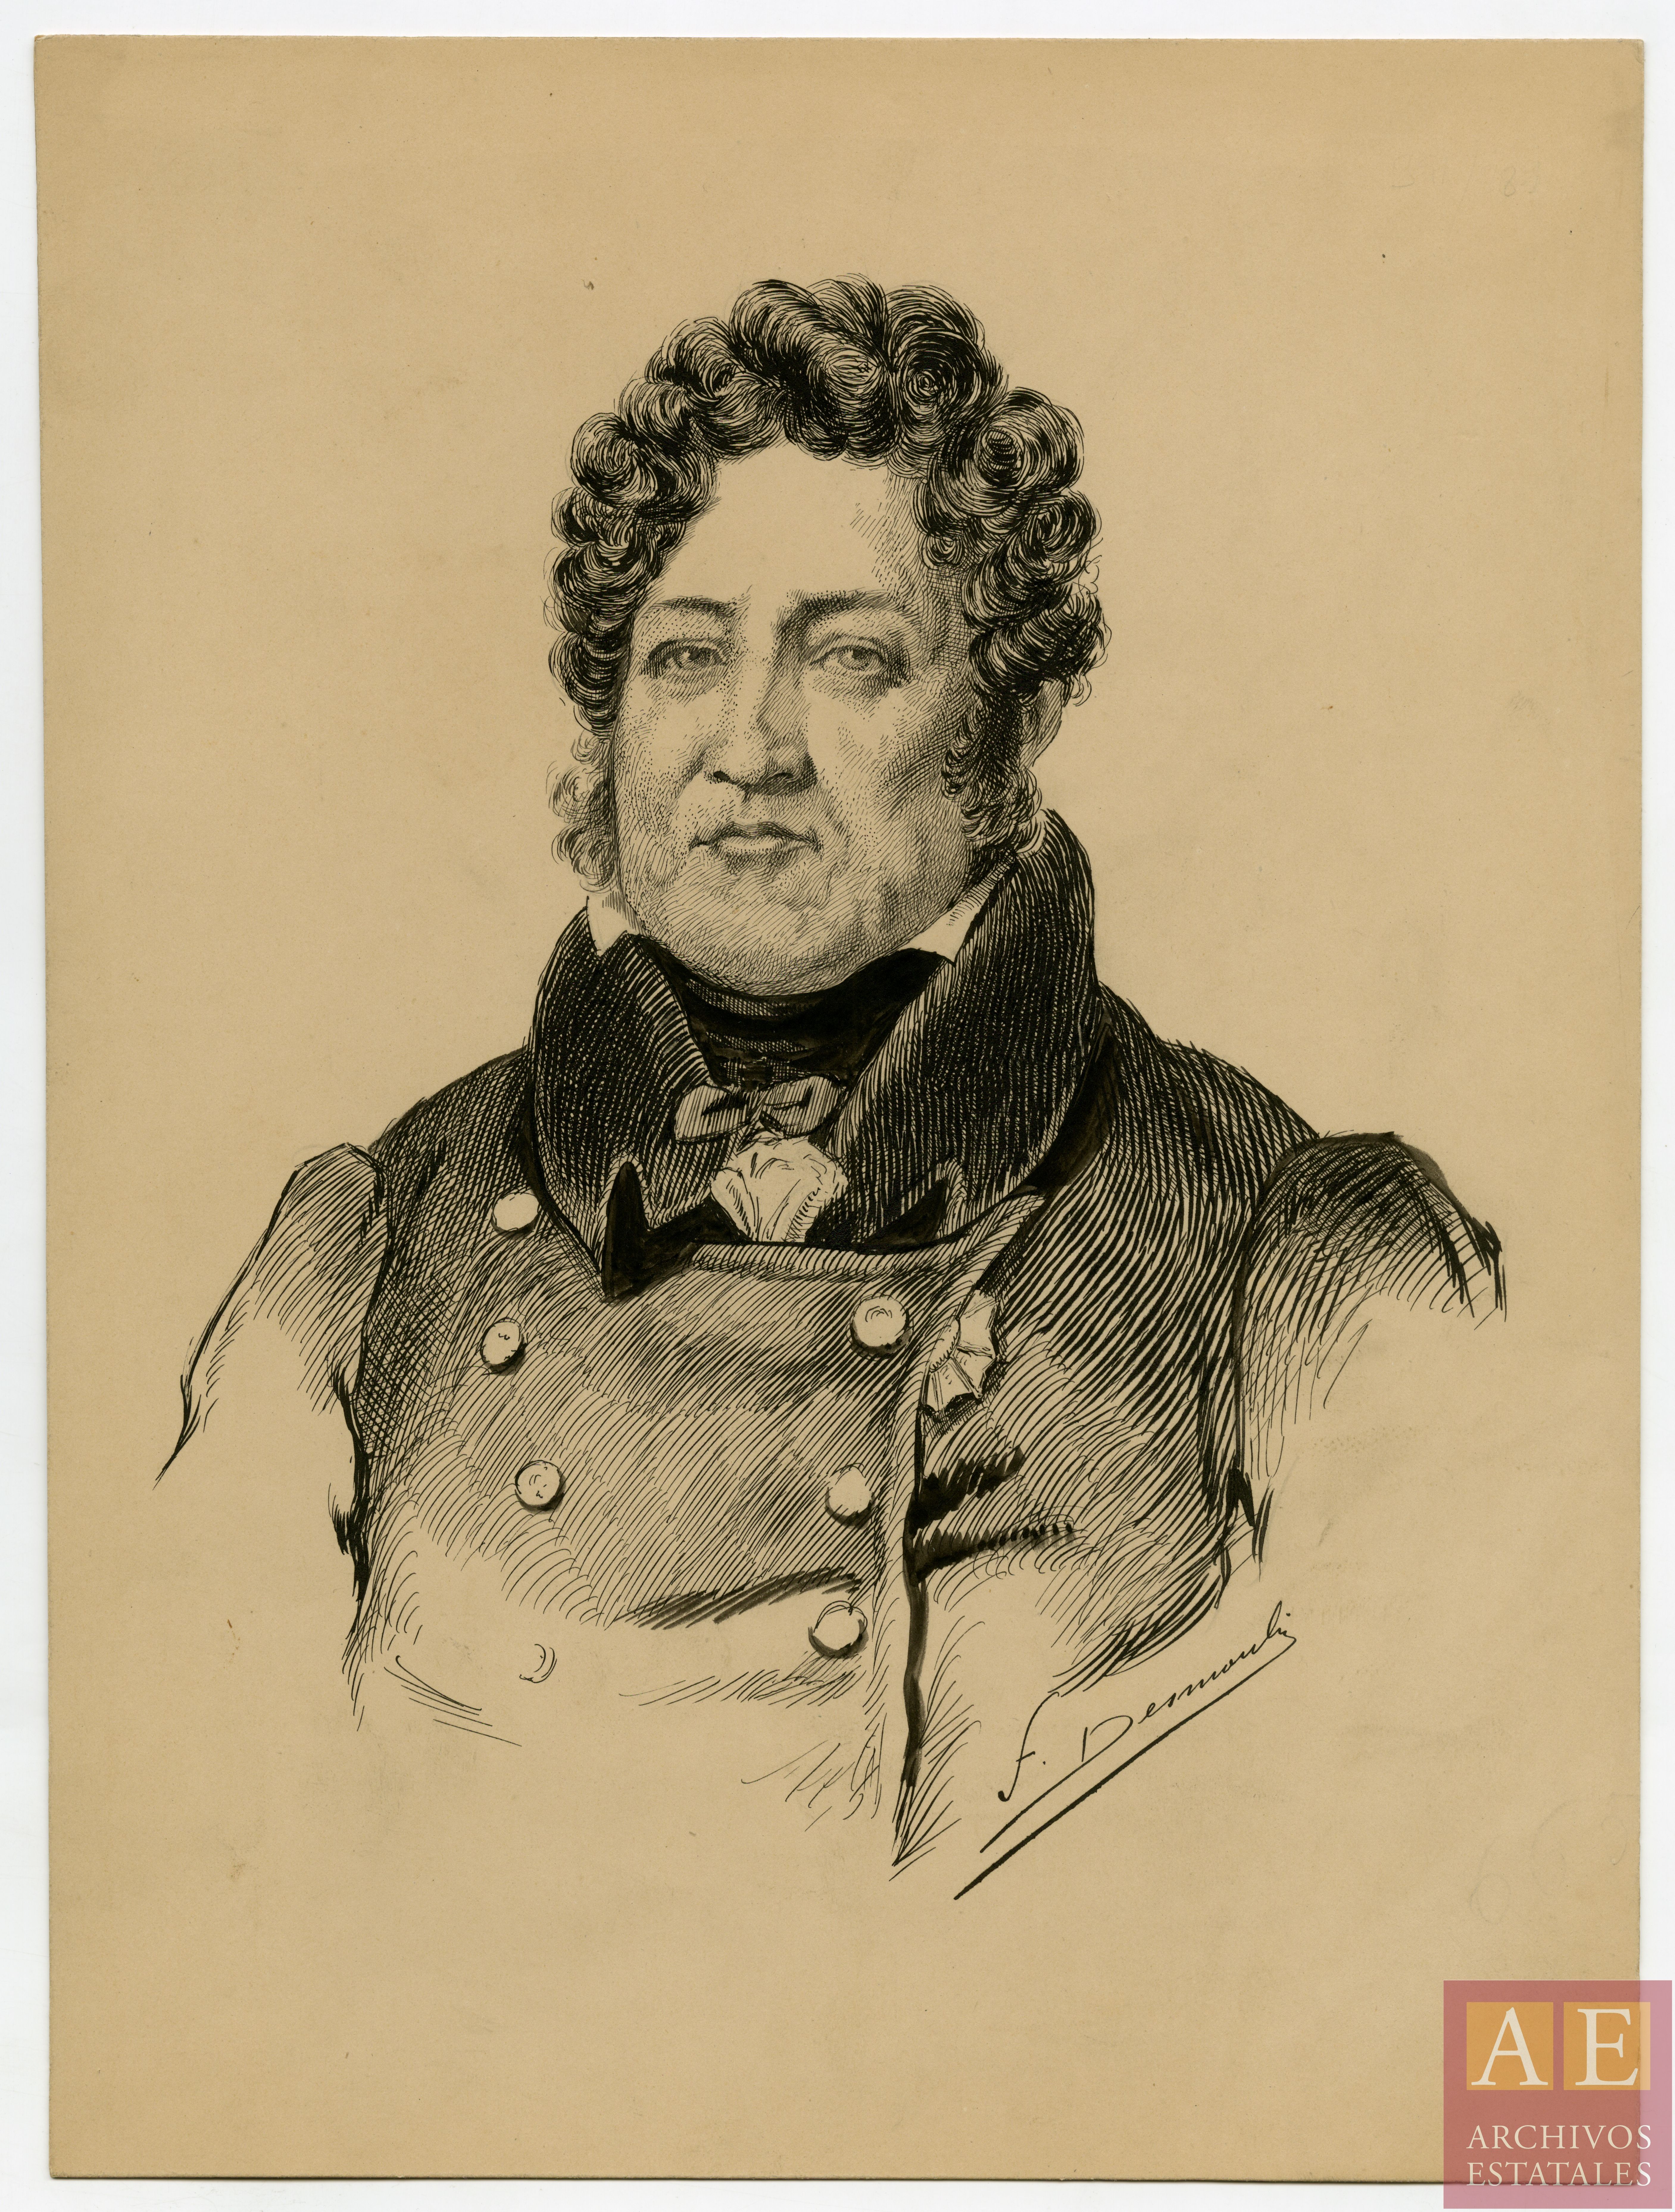 Luis Felipe I (1773-1850, rey de Francia)